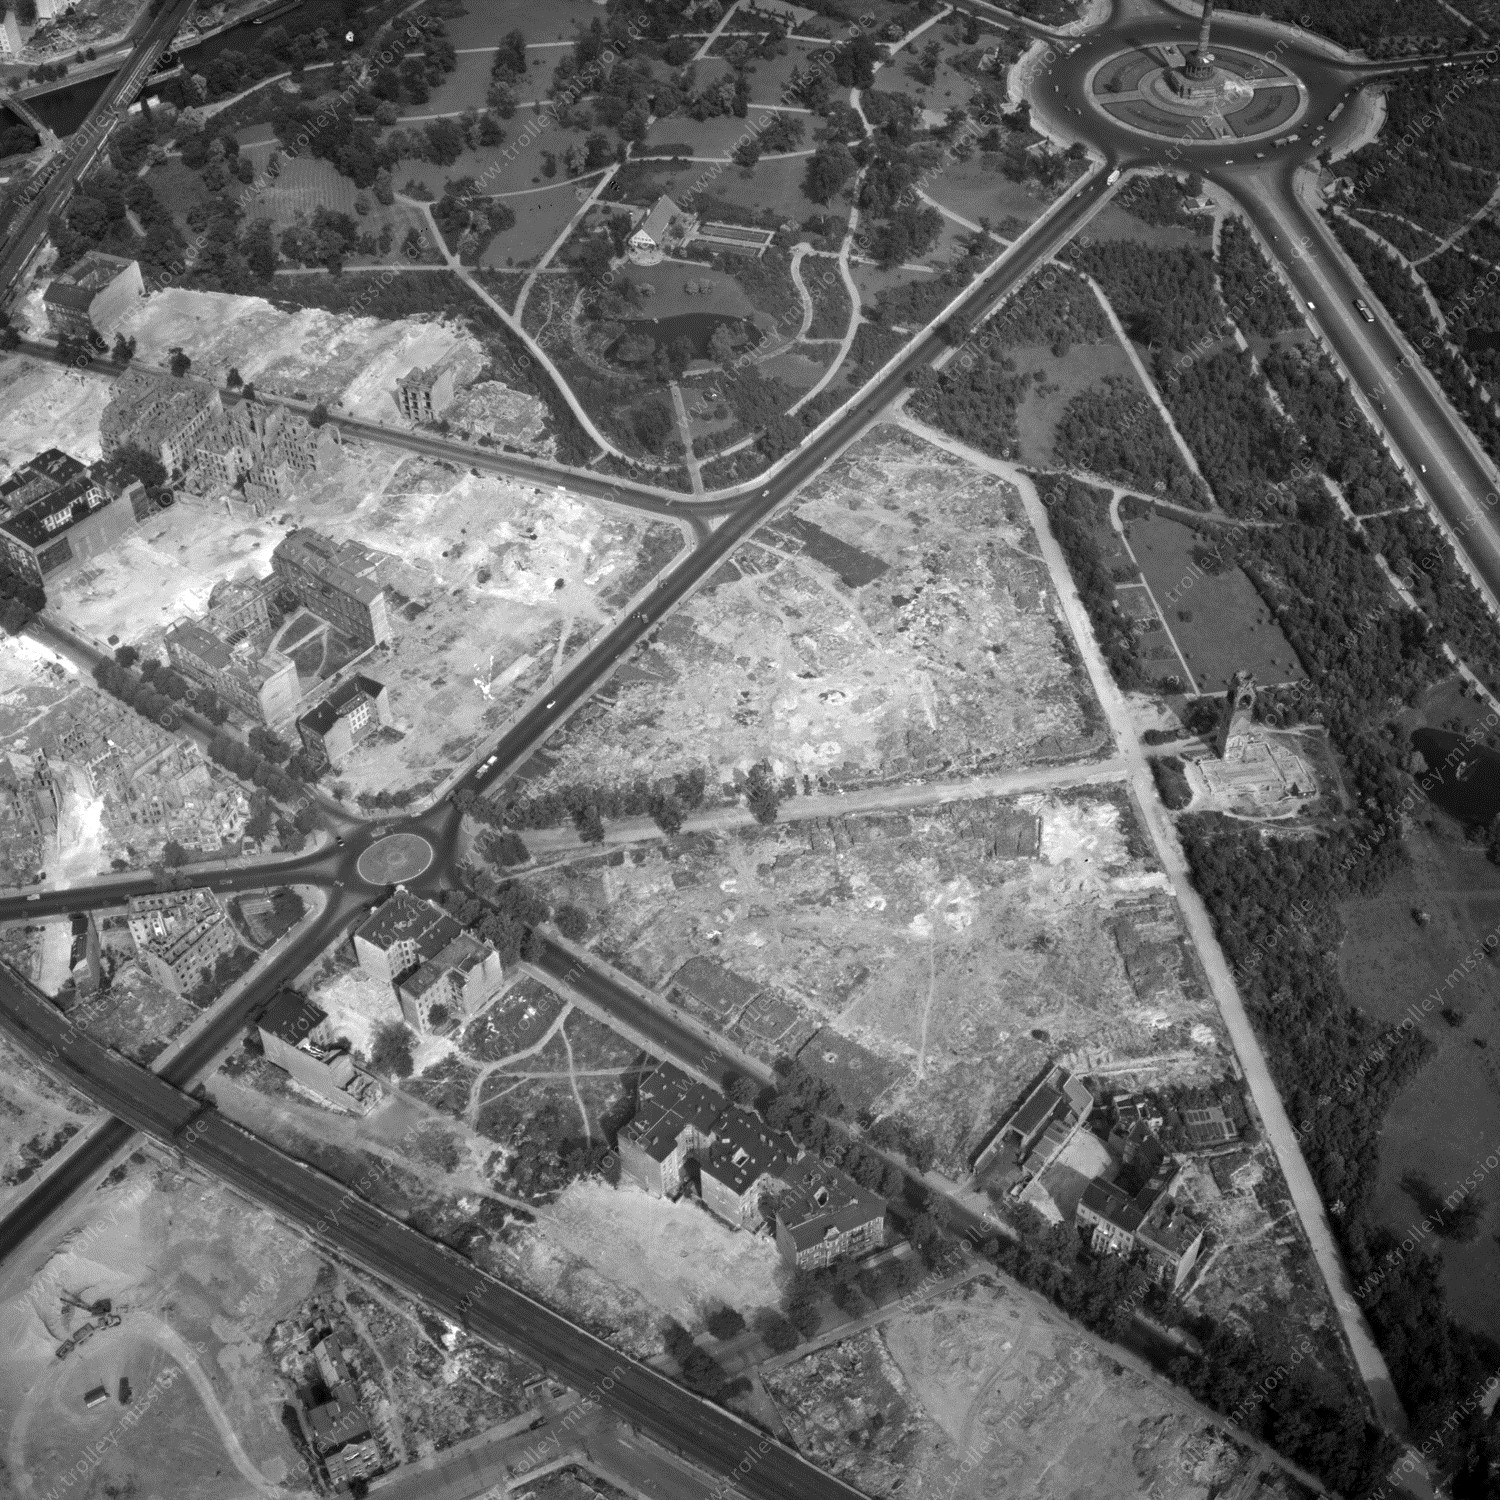 Alte Fotos und Luftbilder von Berlin - Luftbildaufnahme Nr. 05 - Historische Luftaufnahmen von West-Berlin aus dem Jahr 1954 - Flugstrecke Victor